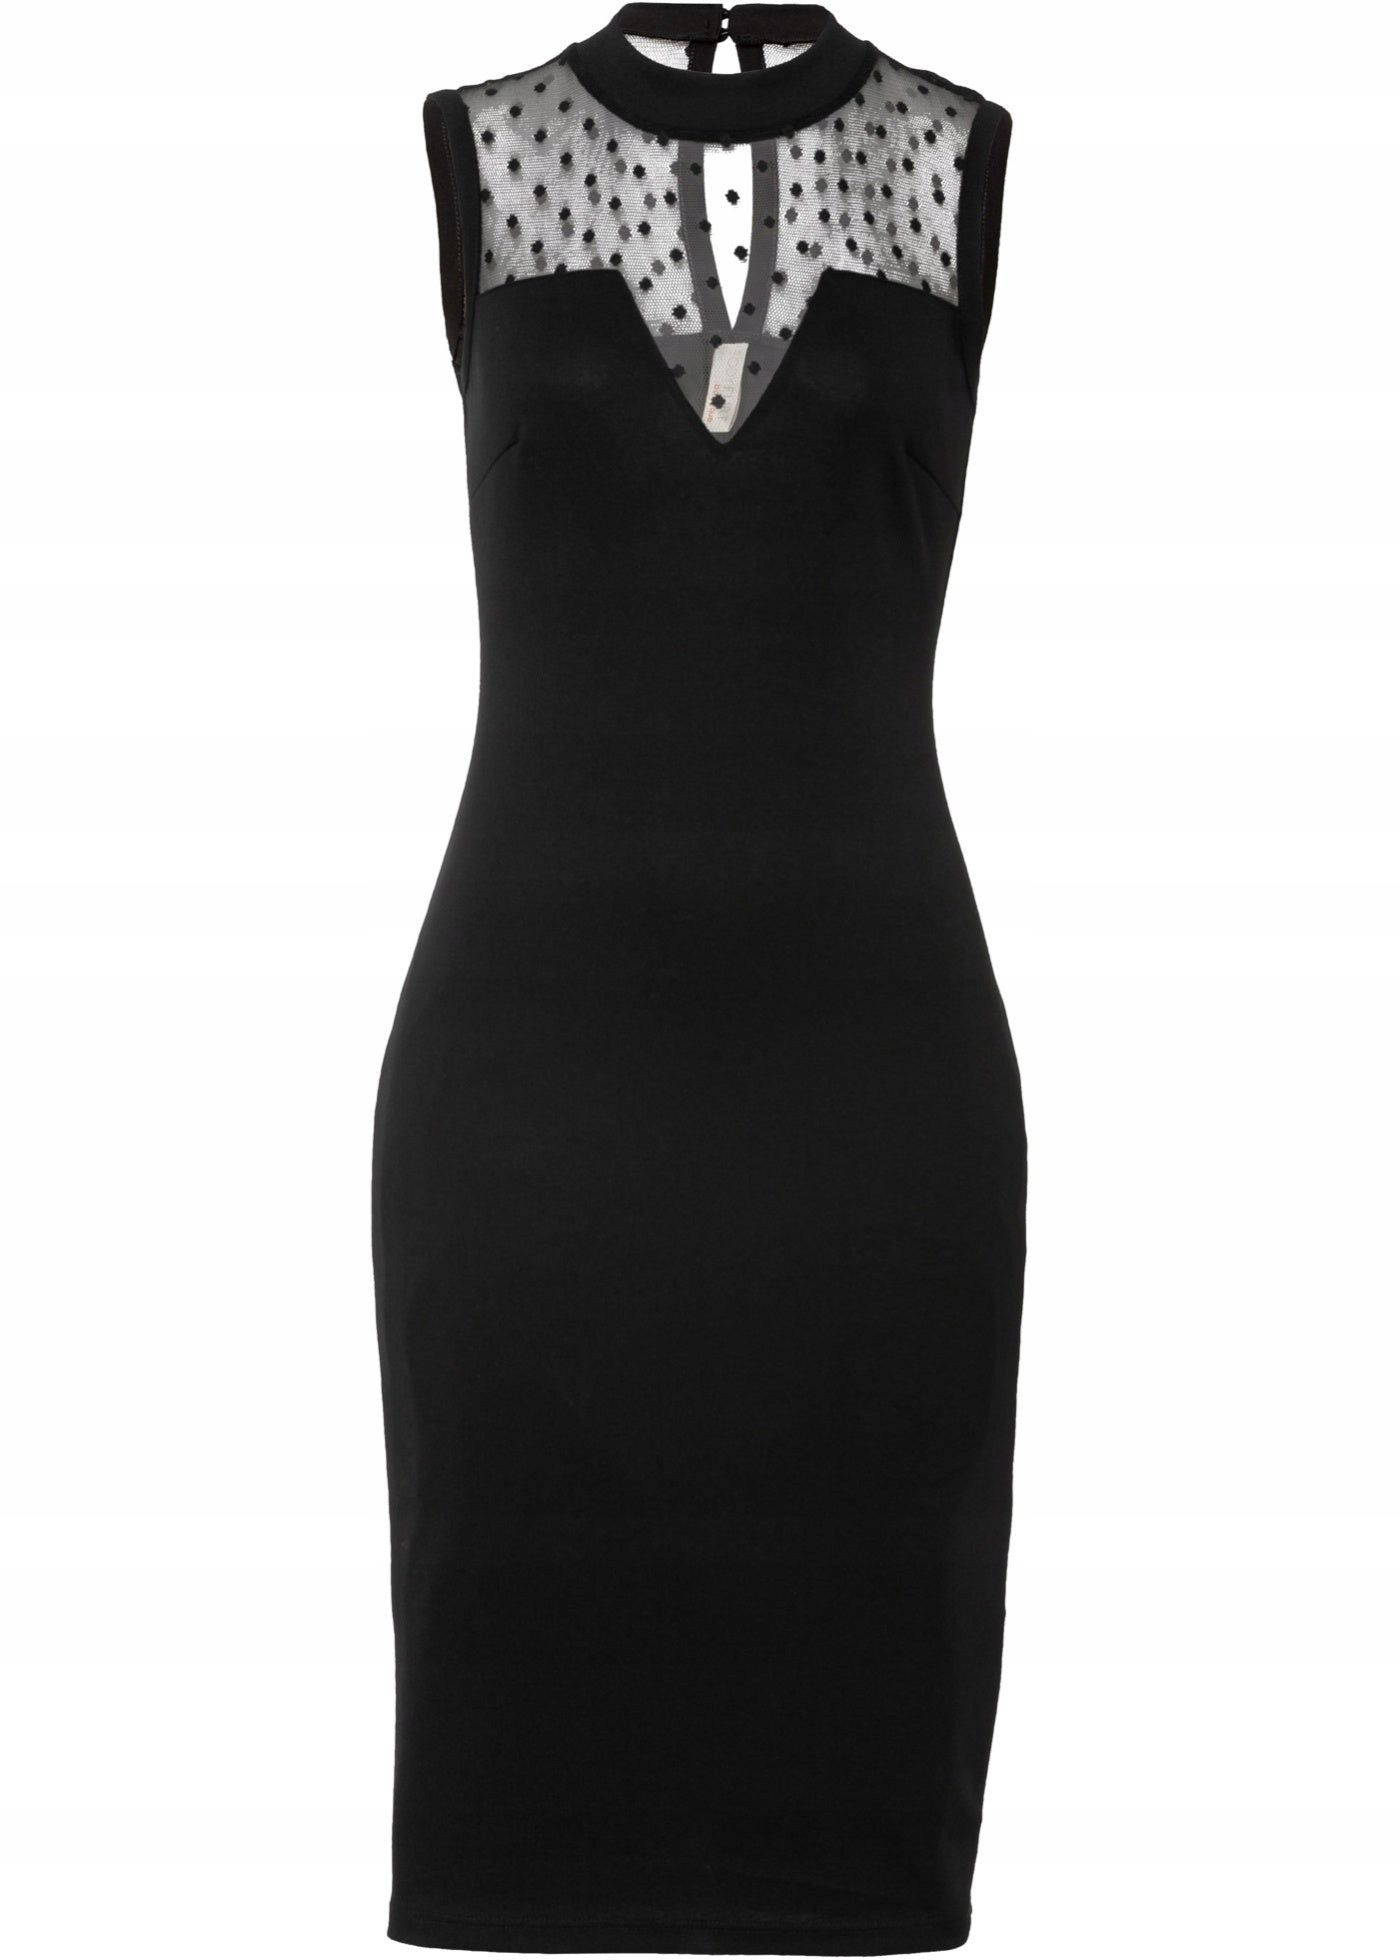 B.P.C czarna sukienka midi z siateczką ^36/38